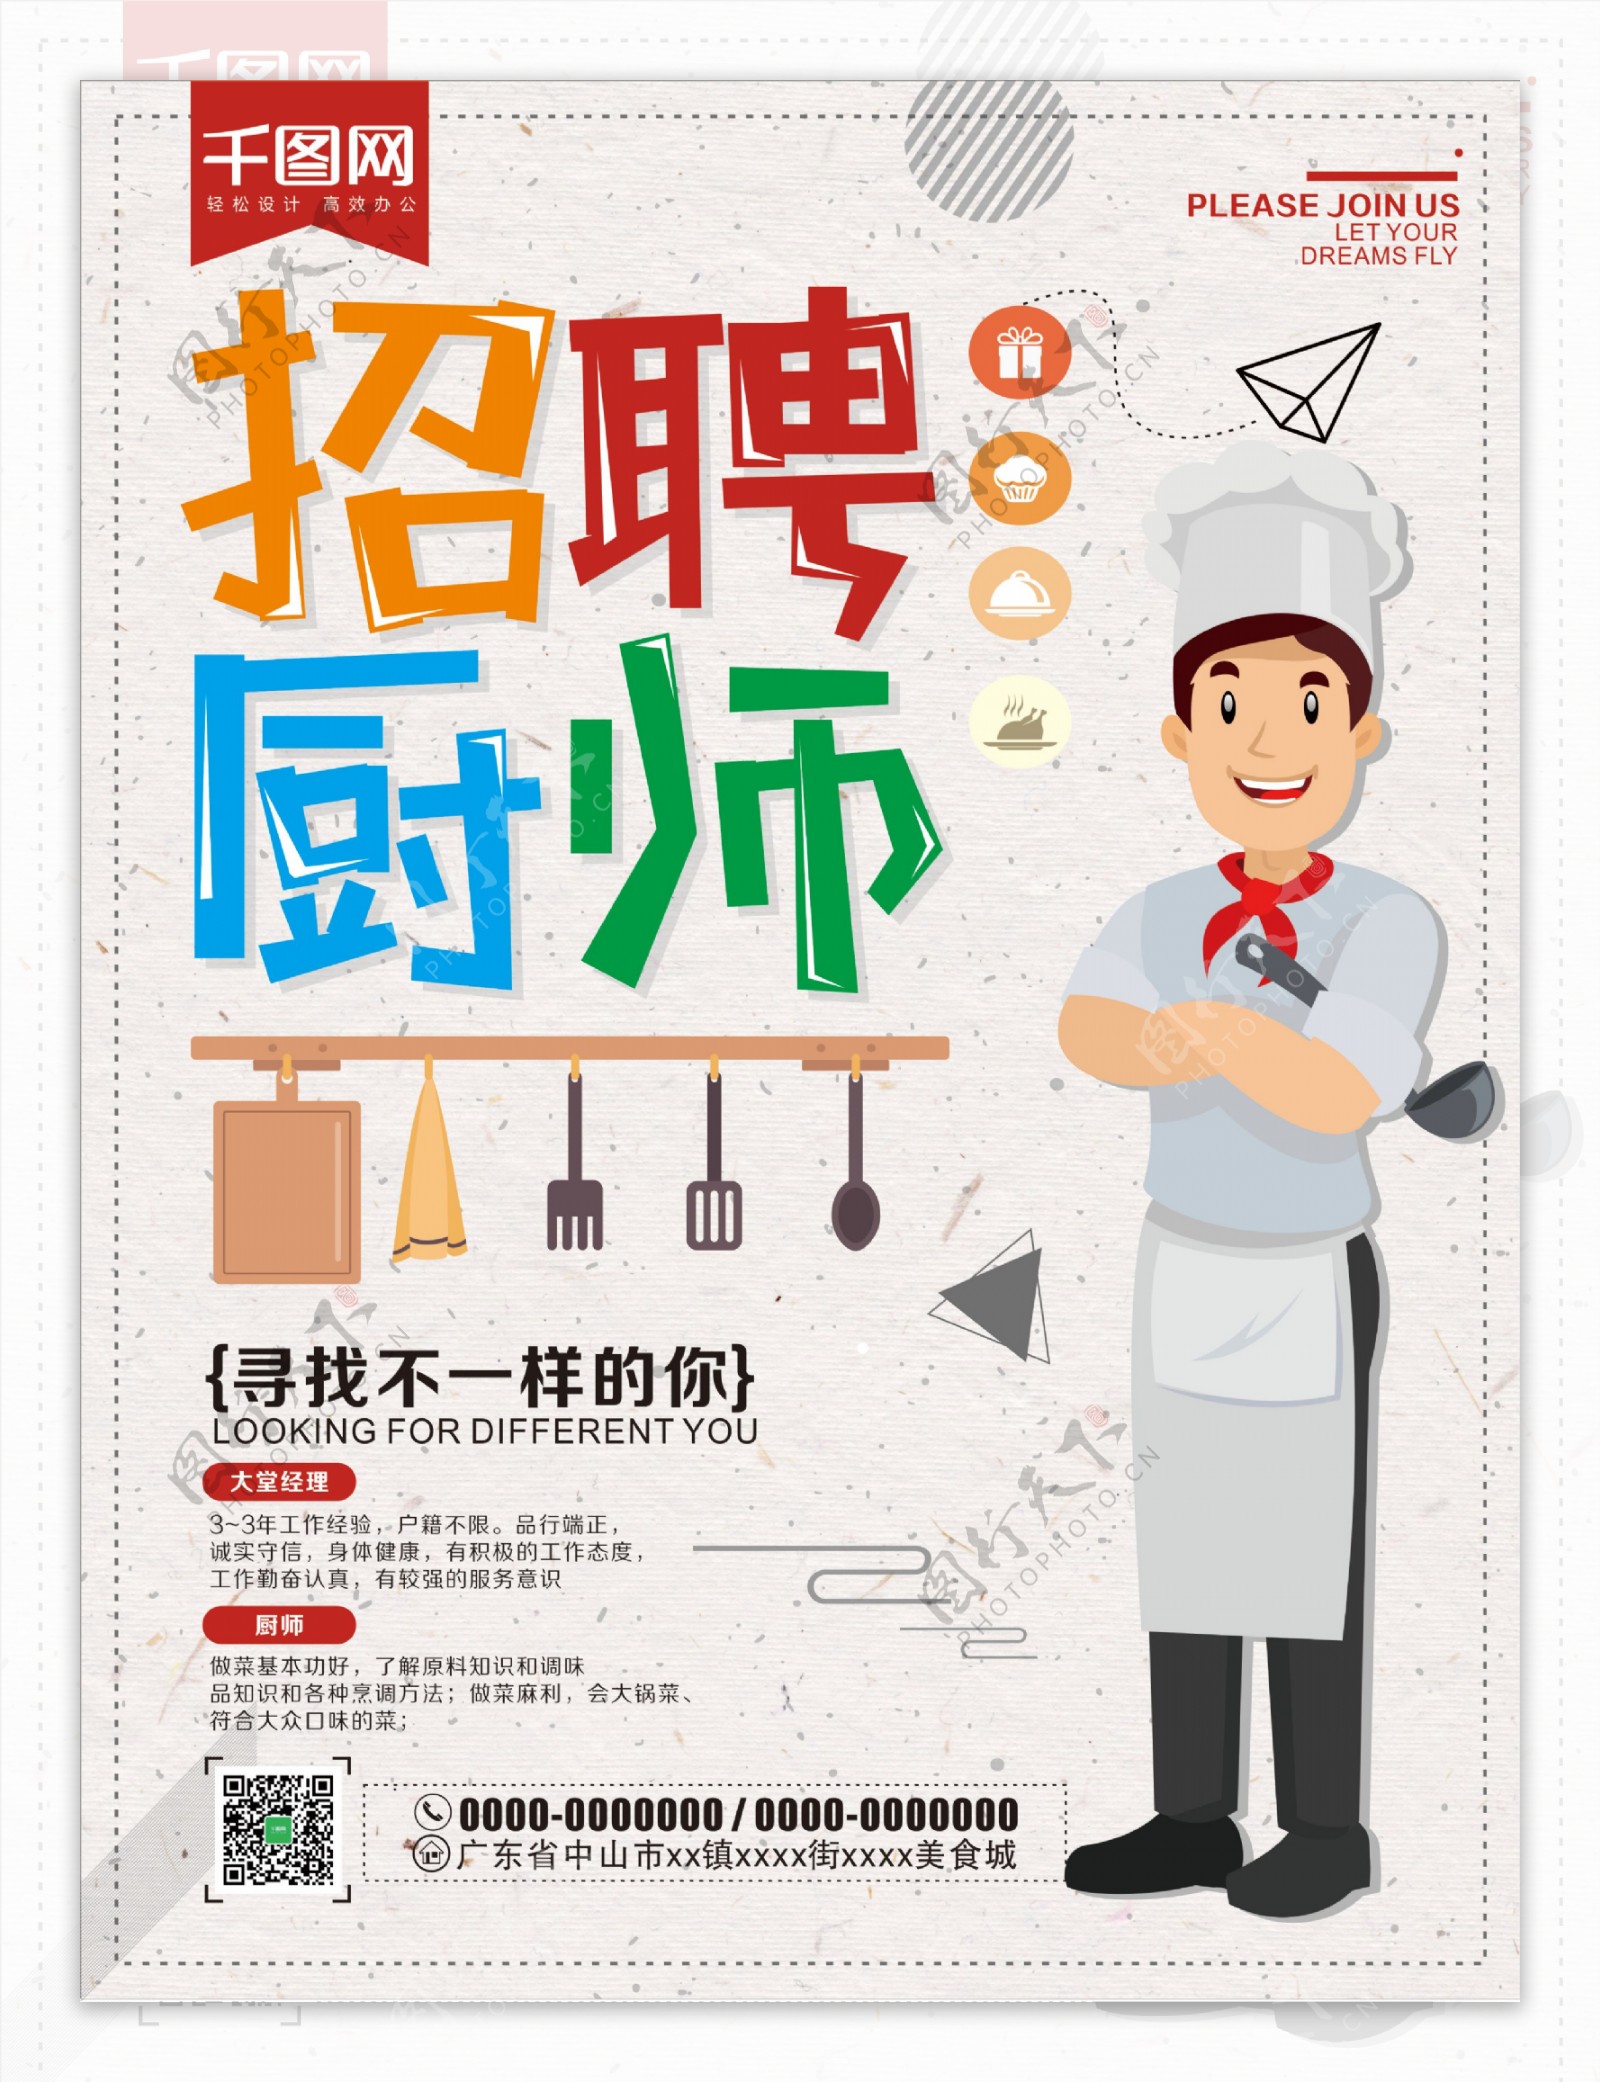 彩色字体设计卡通厨师后厨切菜工简约招聘厨师海报